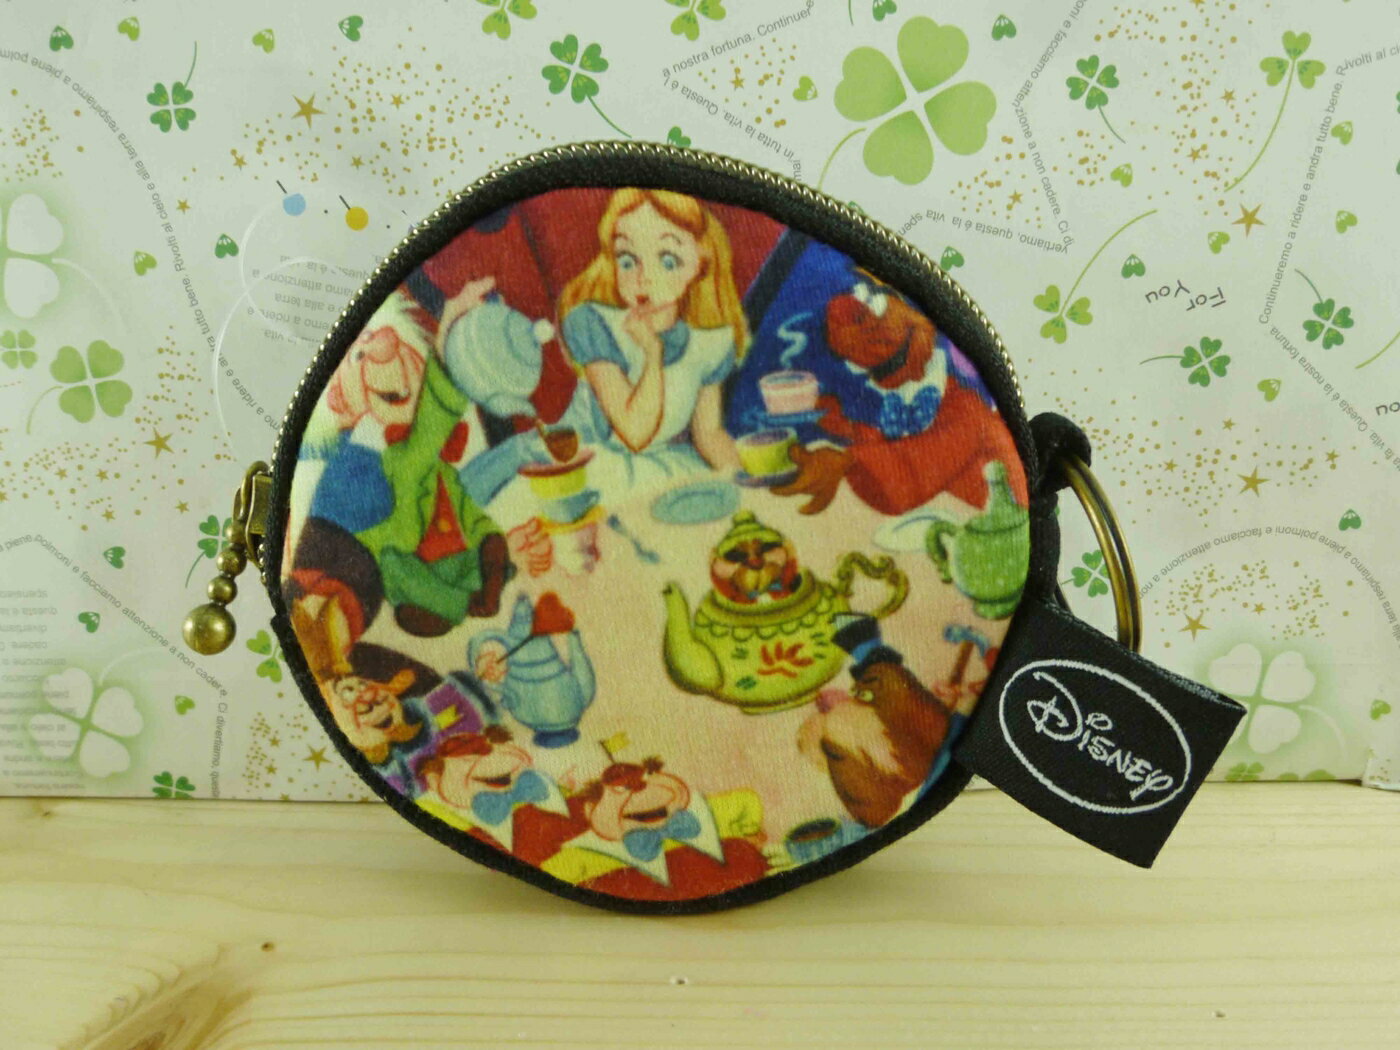 【震撼精品百貨】Disney 迪士尼公主系列 愛麗絲零錢包 震撼日式精品百貨